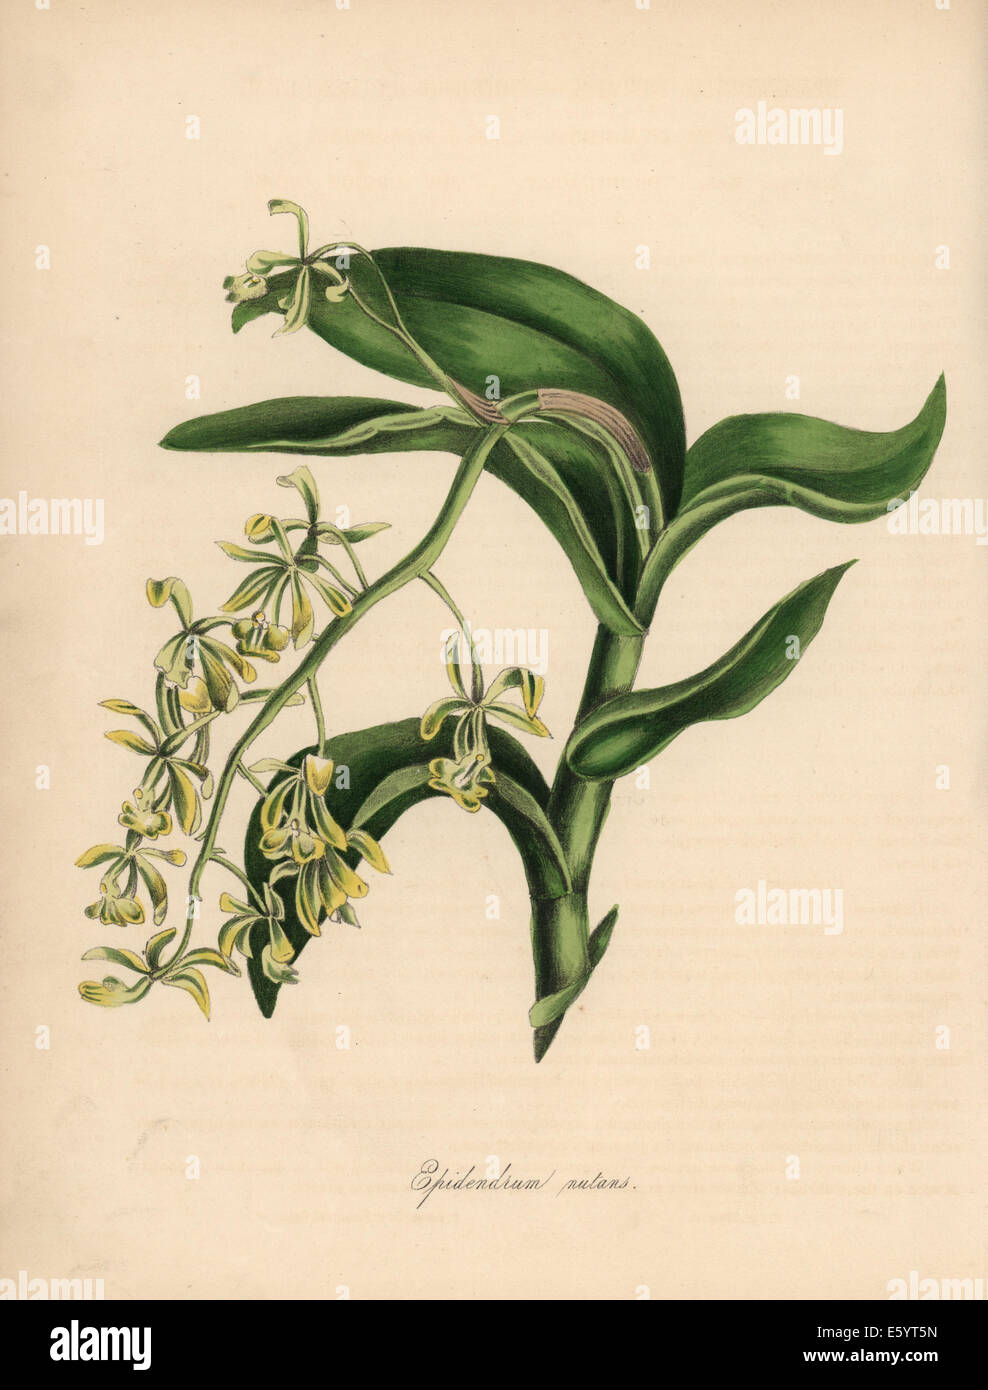 Nodding epidendrum orchid, Epidendrum nutans. Stock Photo